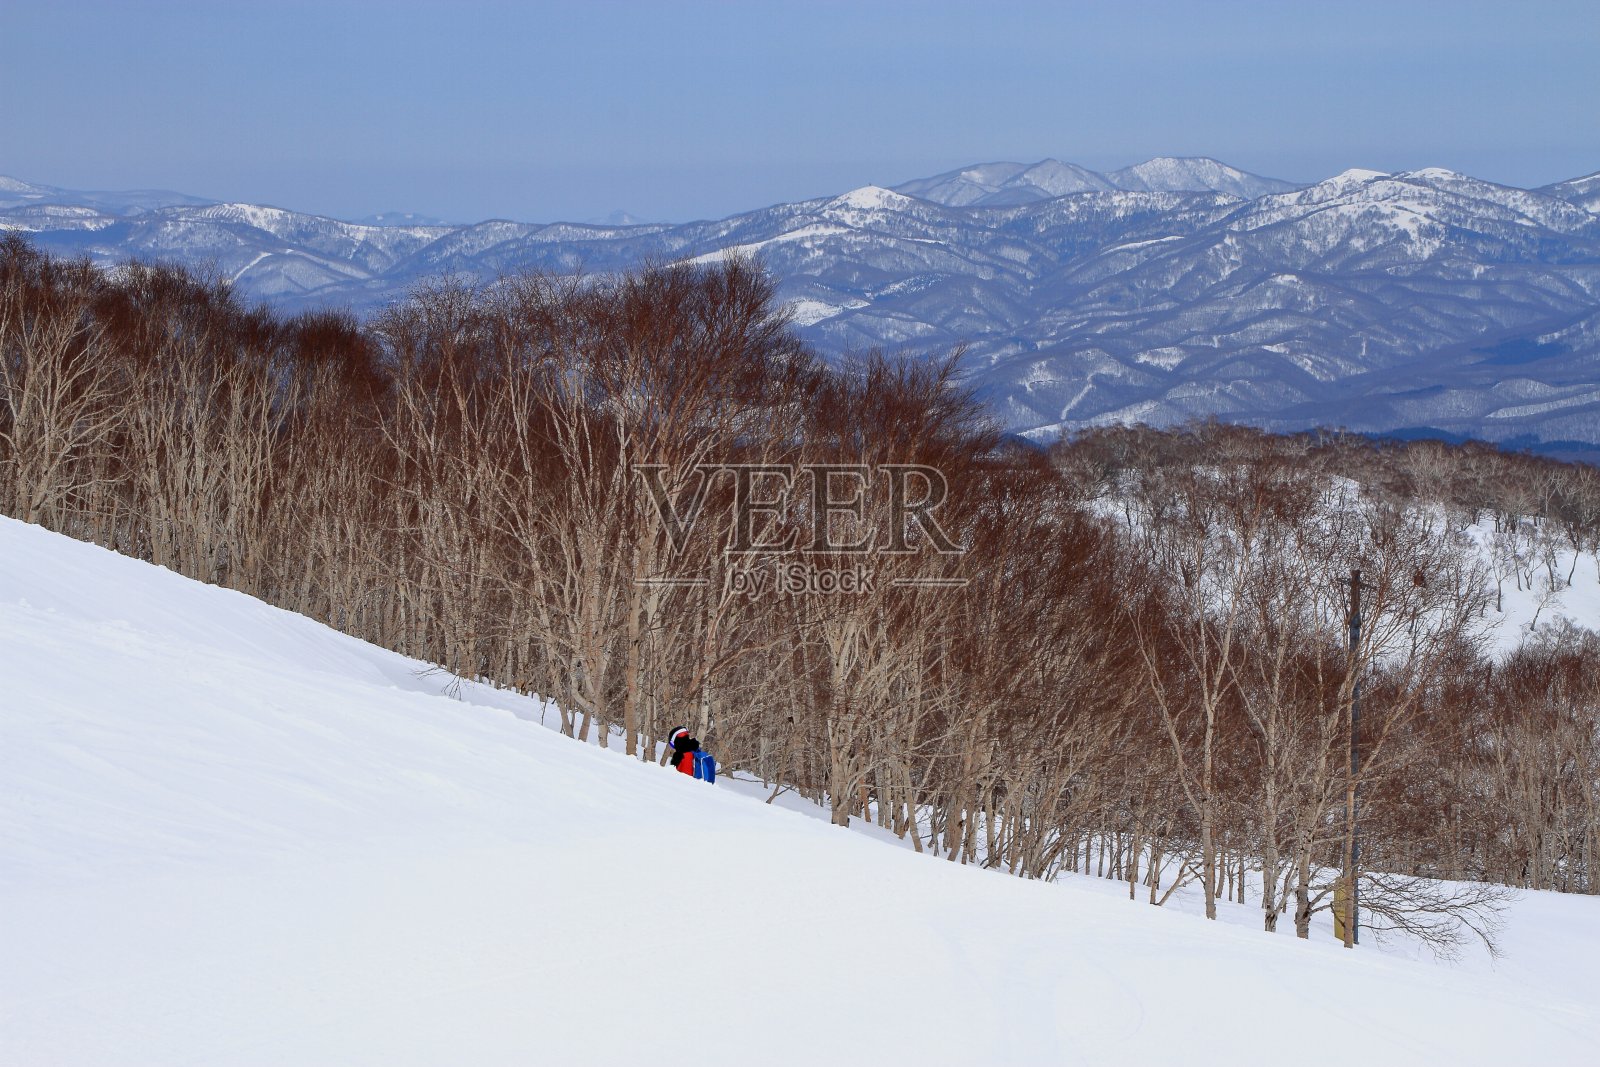 二世子平夫滑雪场的风景照片摄影图片